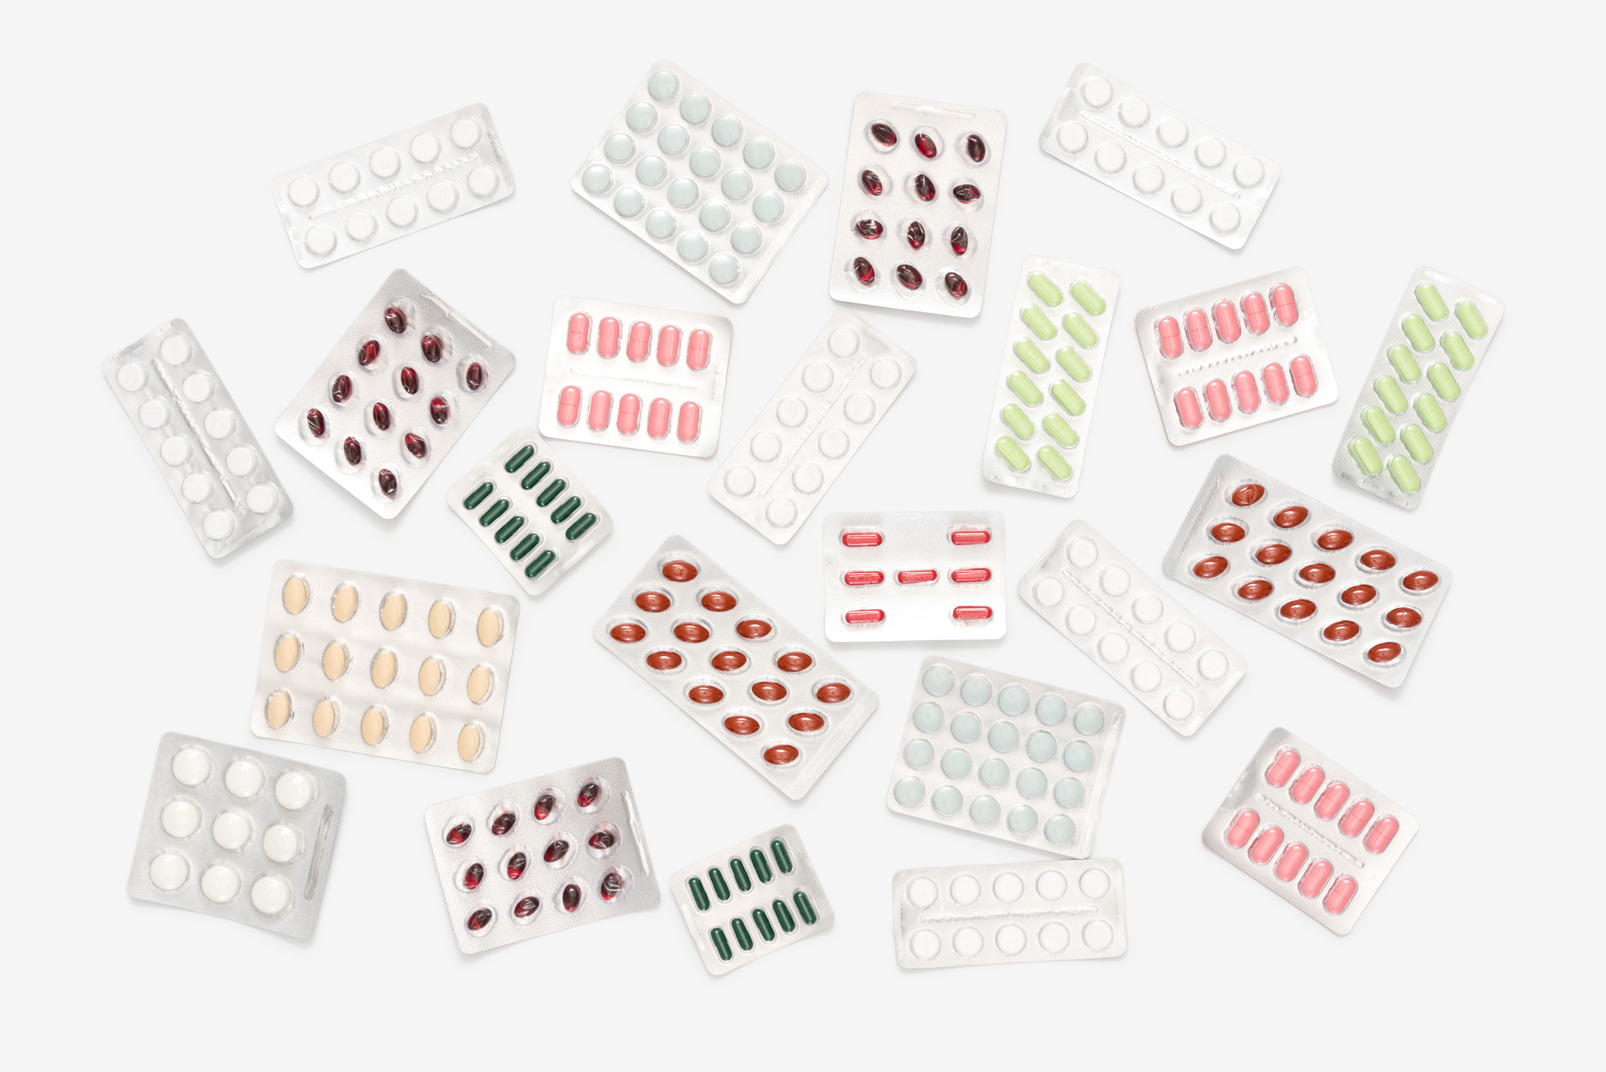 Blister packs of multicolored pills